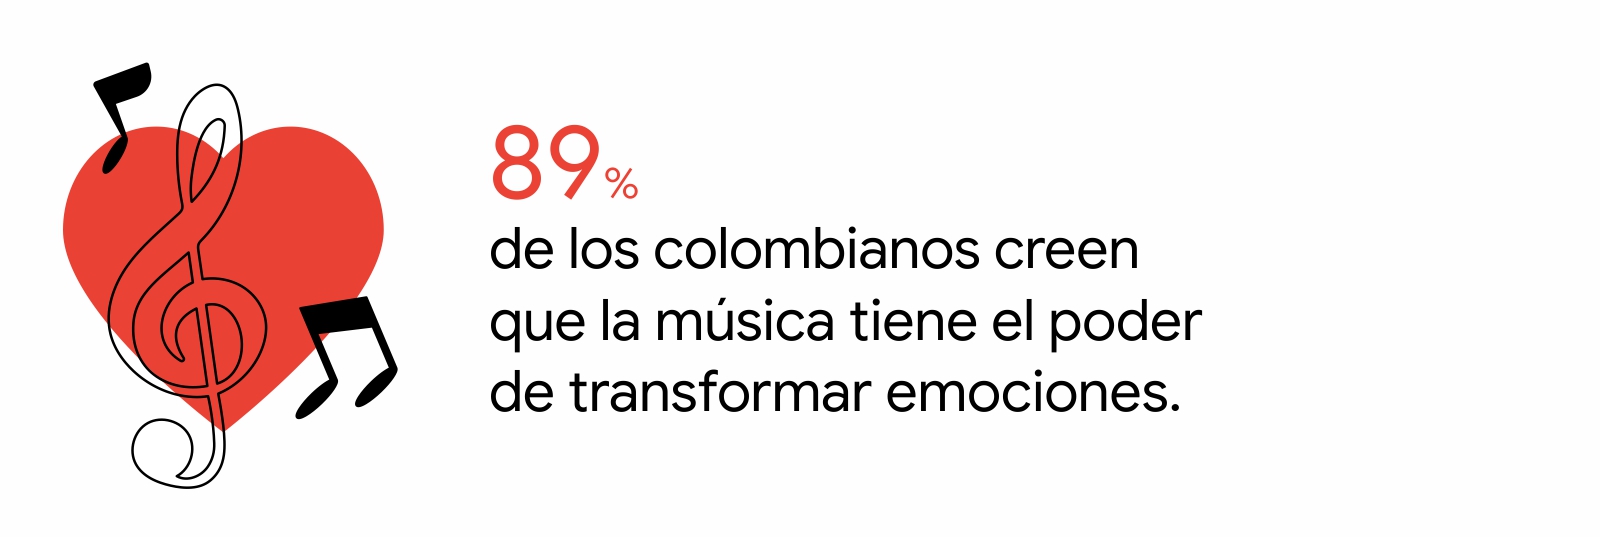 Un dibujo de un corazón en rojo con tres notas musicales. A la darecha, el insight: El 89% de los mexicanos y de los colombianos creen que la música tiene el poder de transformar emociones.